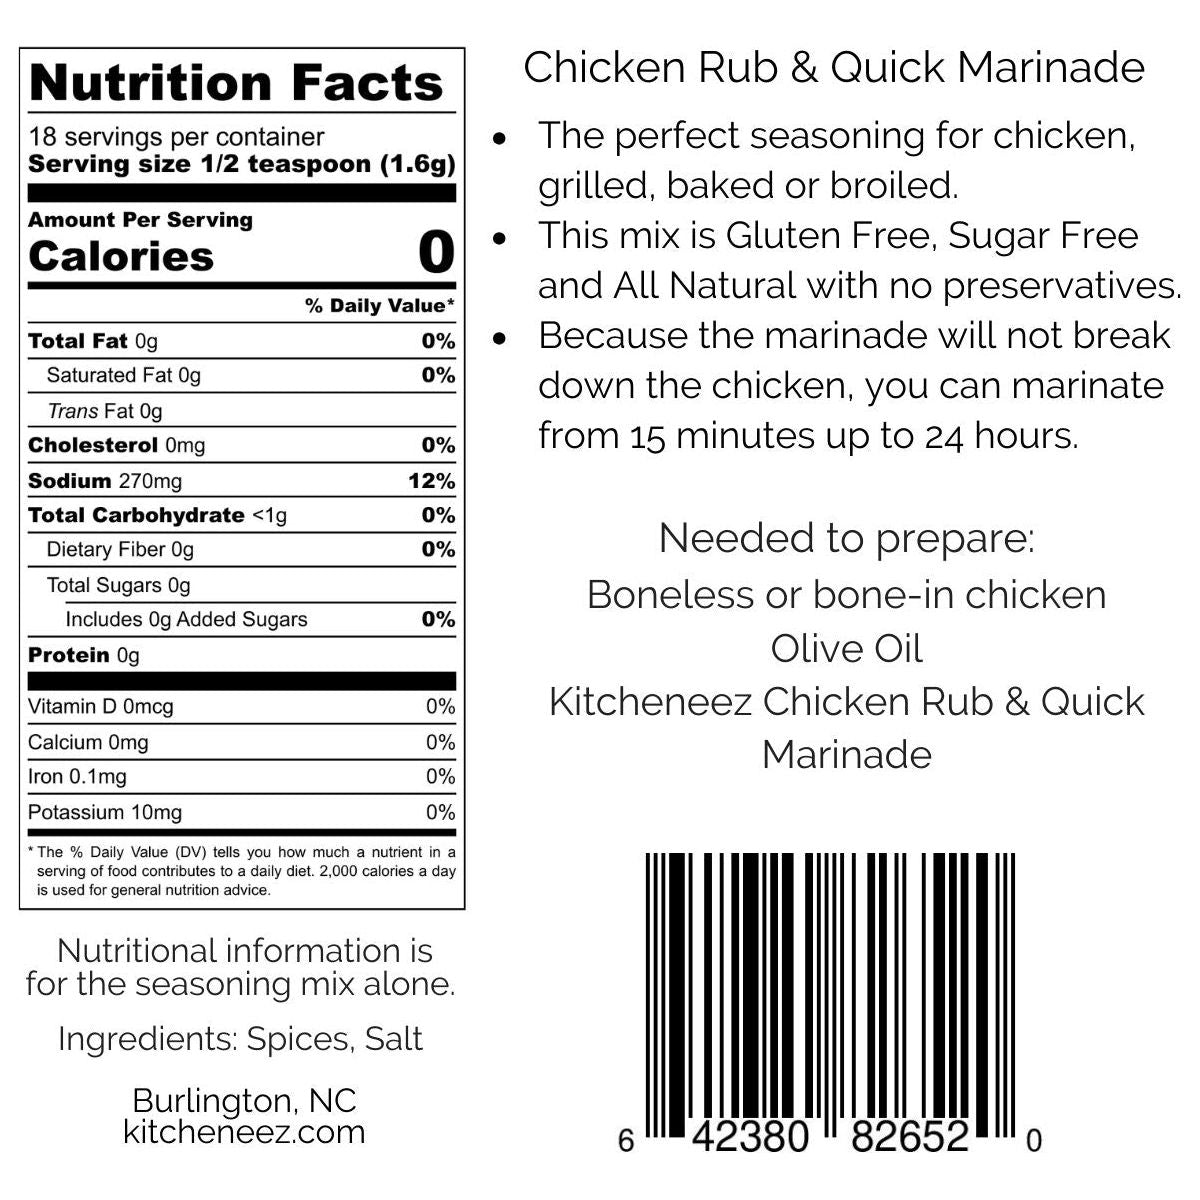 Chicken Rub & Quick Marinade - Kitcheneez Mixes & More!